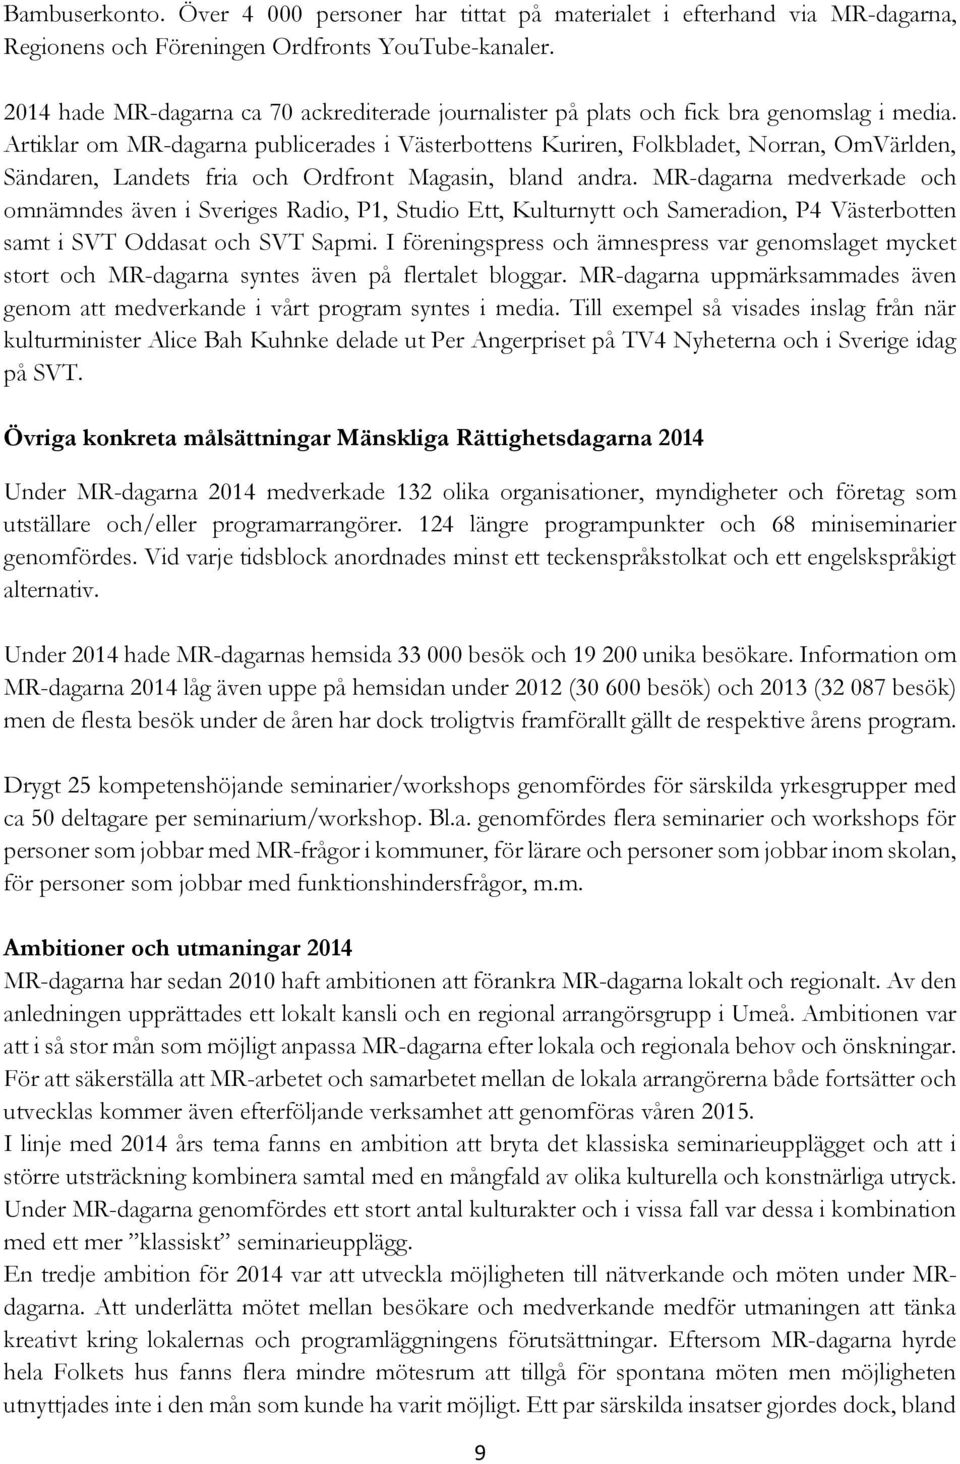 Artiklar om MR-dagarna publicerades i Västerbottens Kuriren, Folkbladet, Norran, OmVärlden, Sändaren, Landets fria och Ordfront Magasin, bland andra.